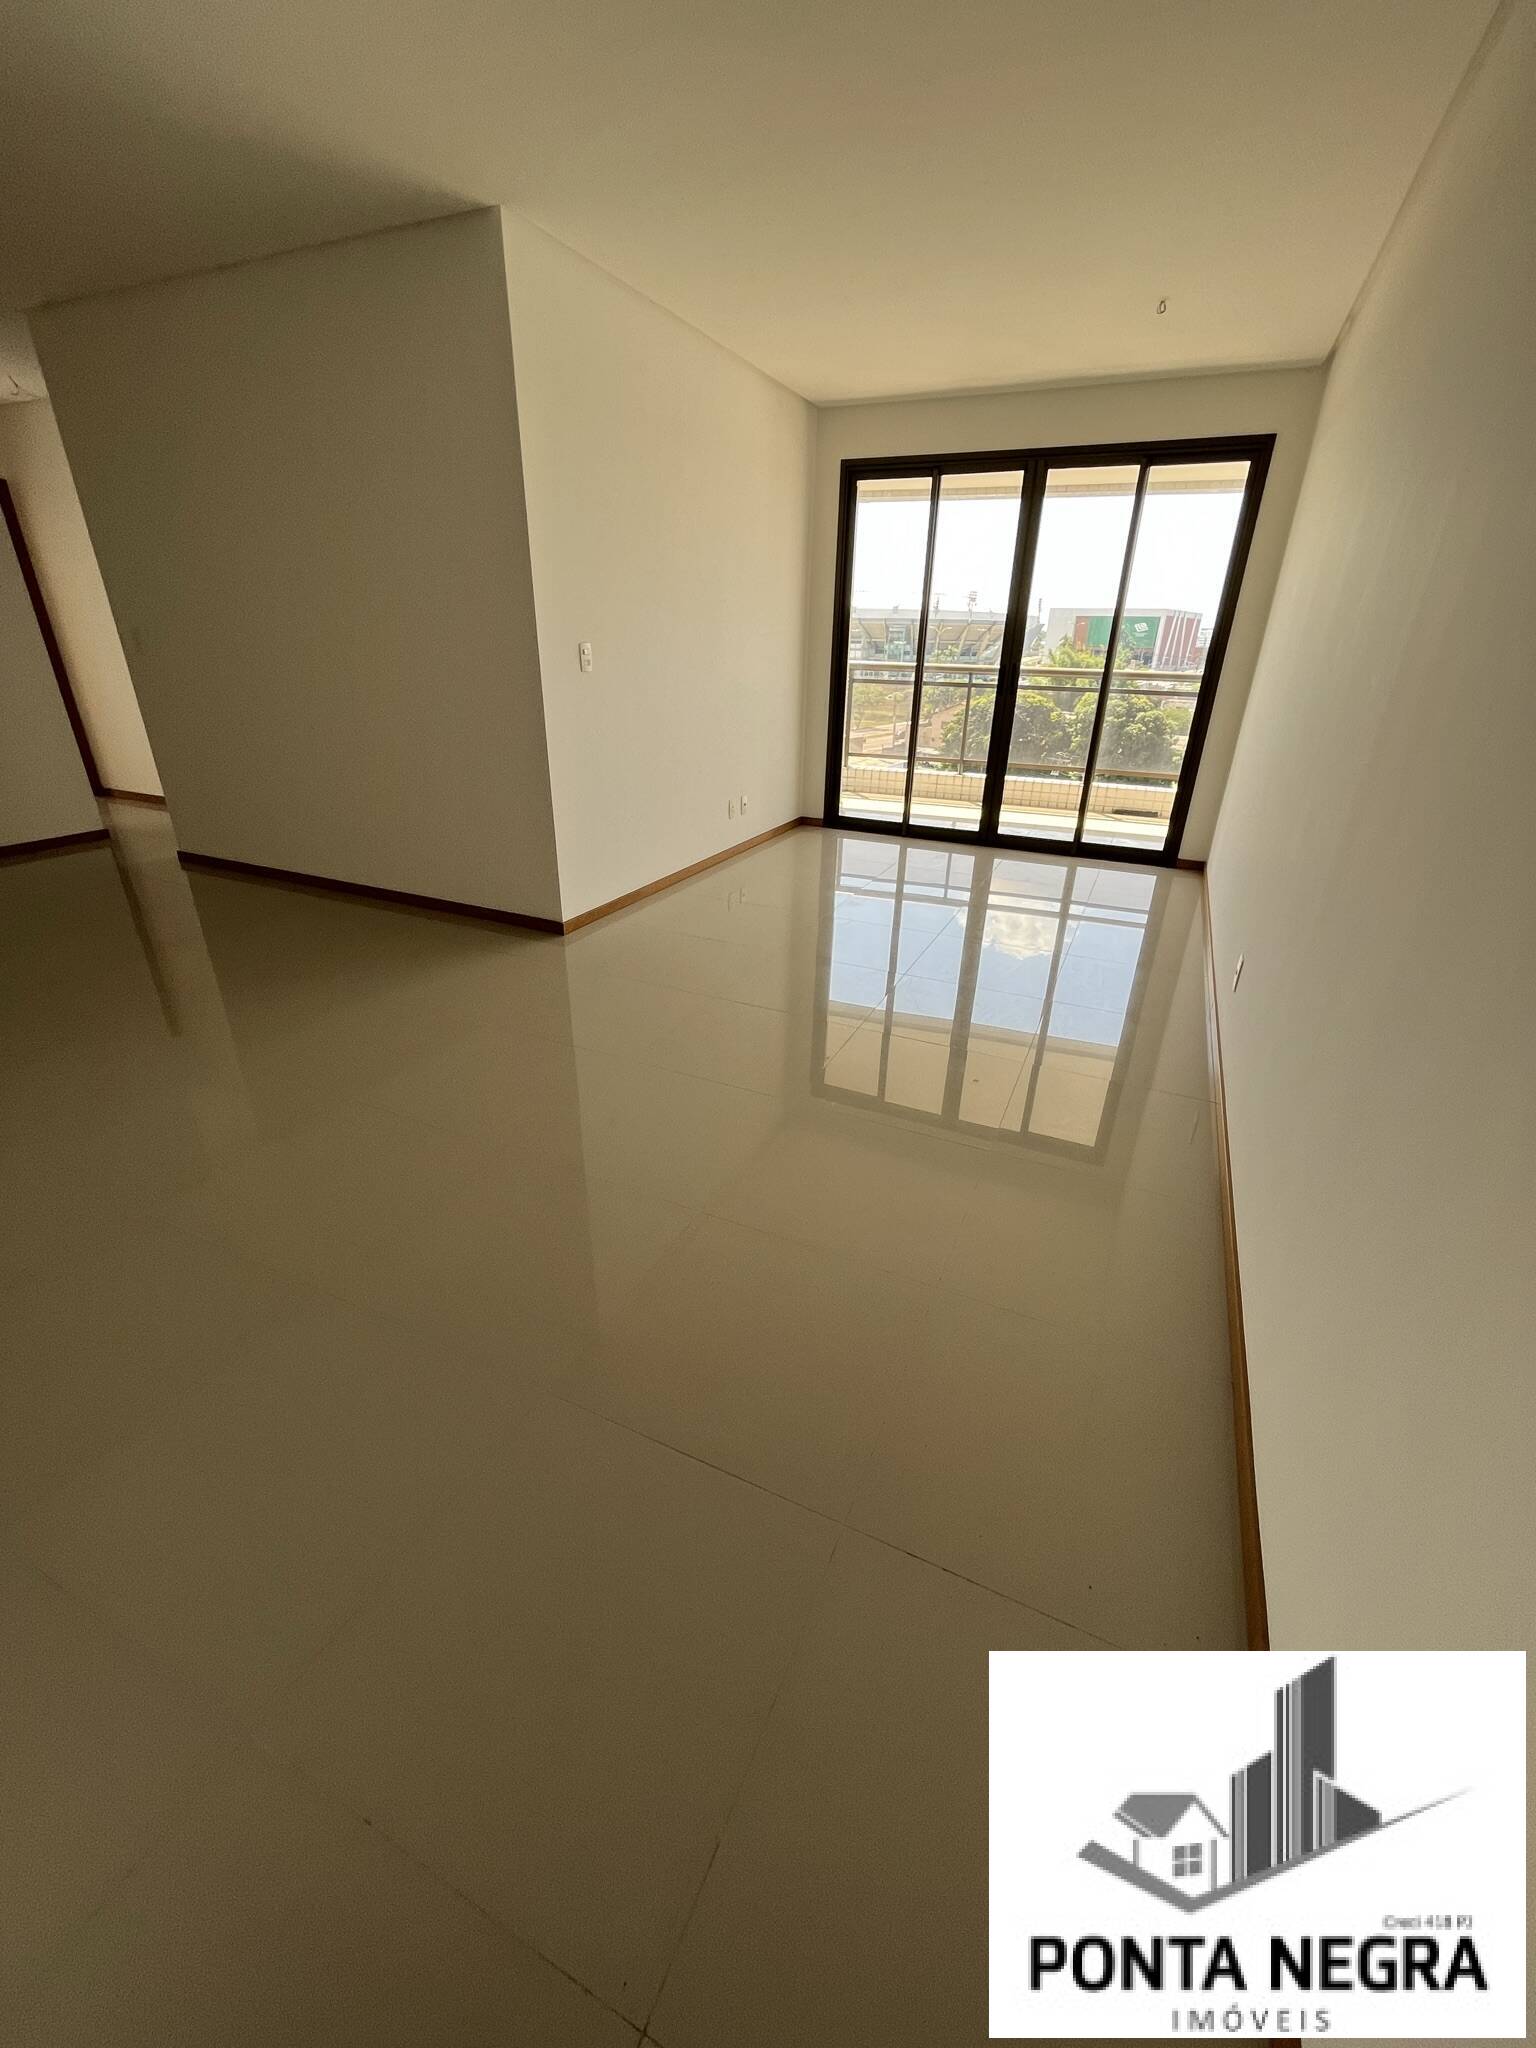 Apartamento, 3 quartos, 110 m² - Foto 3